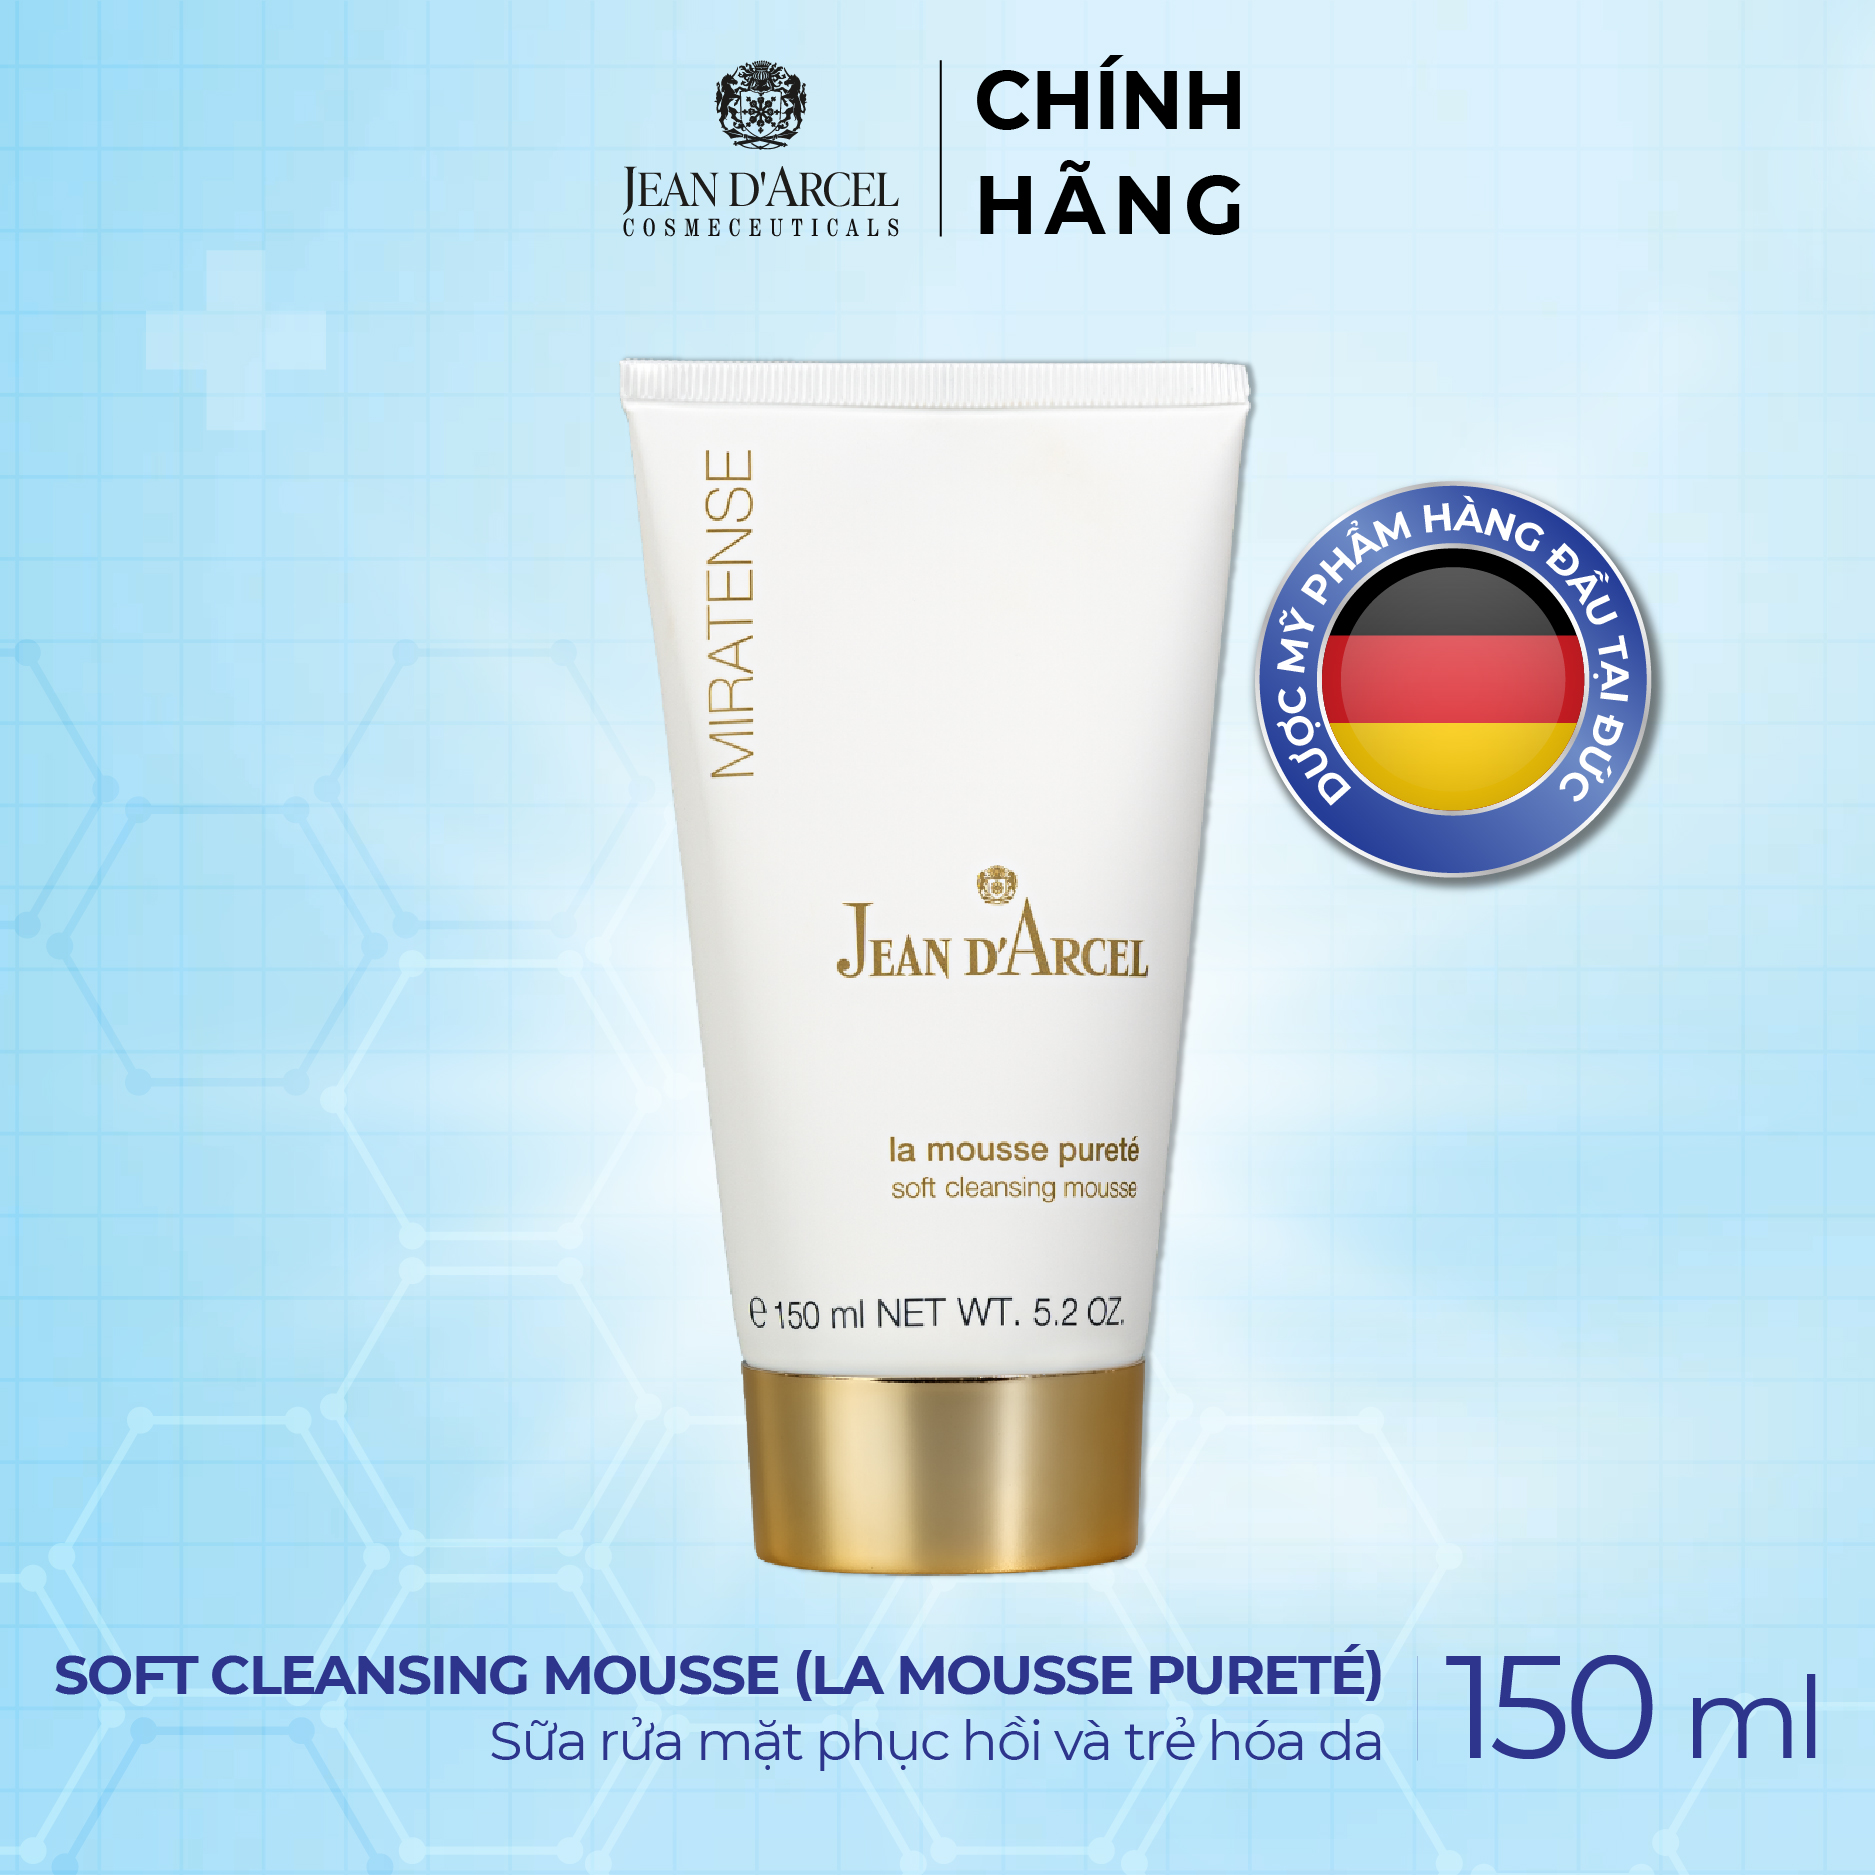 J52 Sữa rửa mặt phục hồi và trẻ hóa da Miratense - Soft Cleansing Mousse La Mousse Pureté 150ml - Jean dArcel